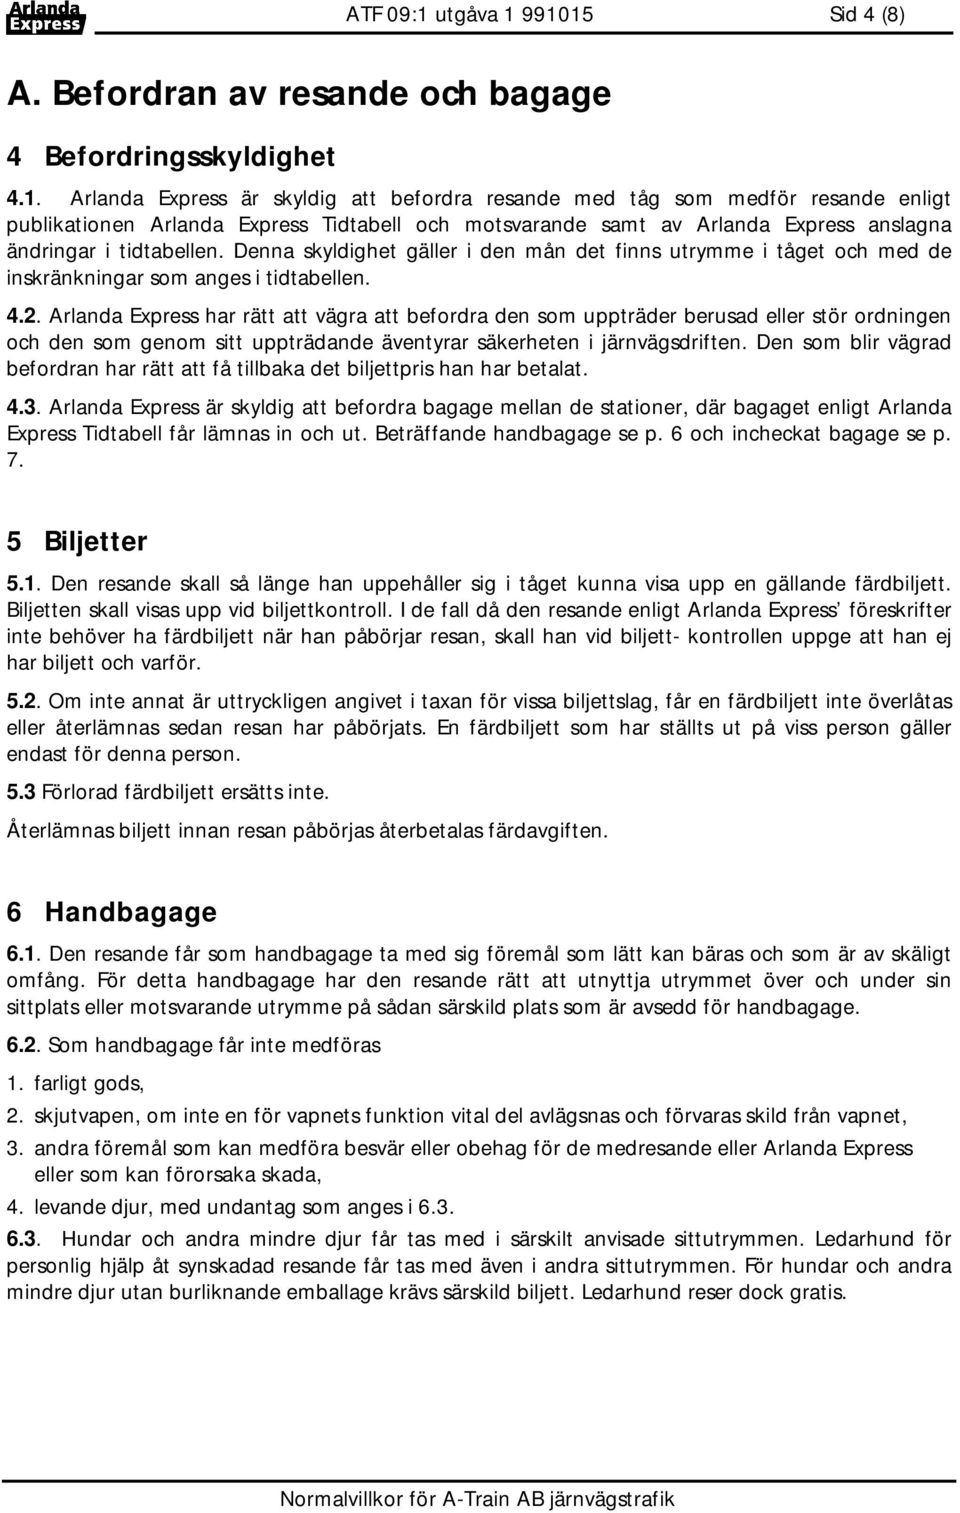 991015 Sid 4 (8) A. Befordran av resande och bagage 4 Befordringsskyldighet 4.1. Arlanda Express är skyldig att befordra resande med tåg som medför resande enligt publikationen Arlanda Express Tidtabell och motsvarande samt av Arlanda Express anslagna ändringar i tidtabellen.